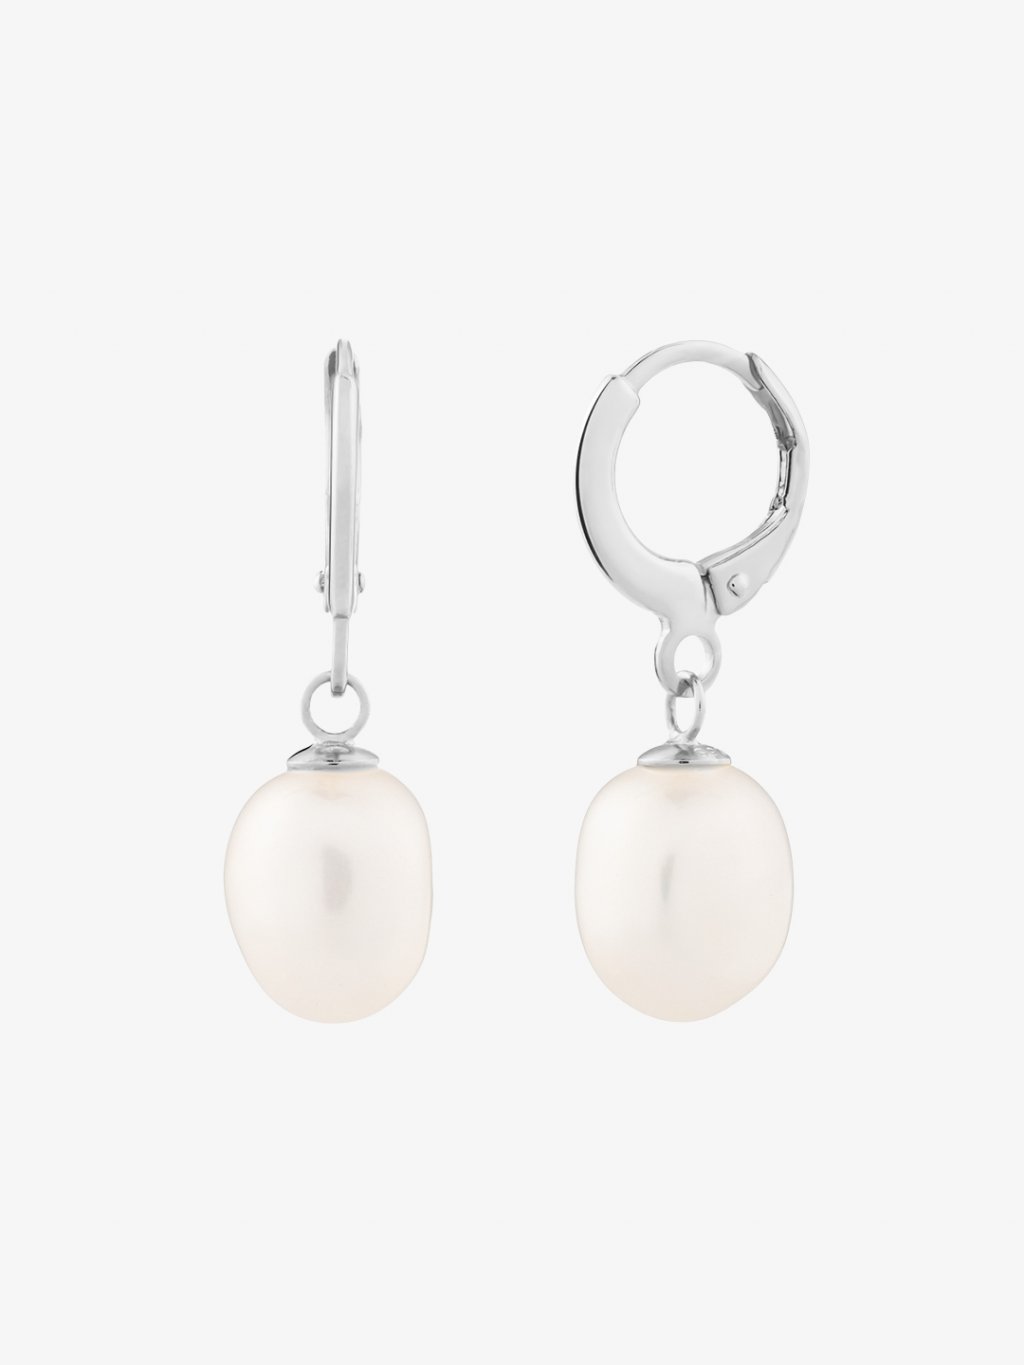 Stříbrné náušnice Pearl Heart s říční perlou Preciosa 5357 01